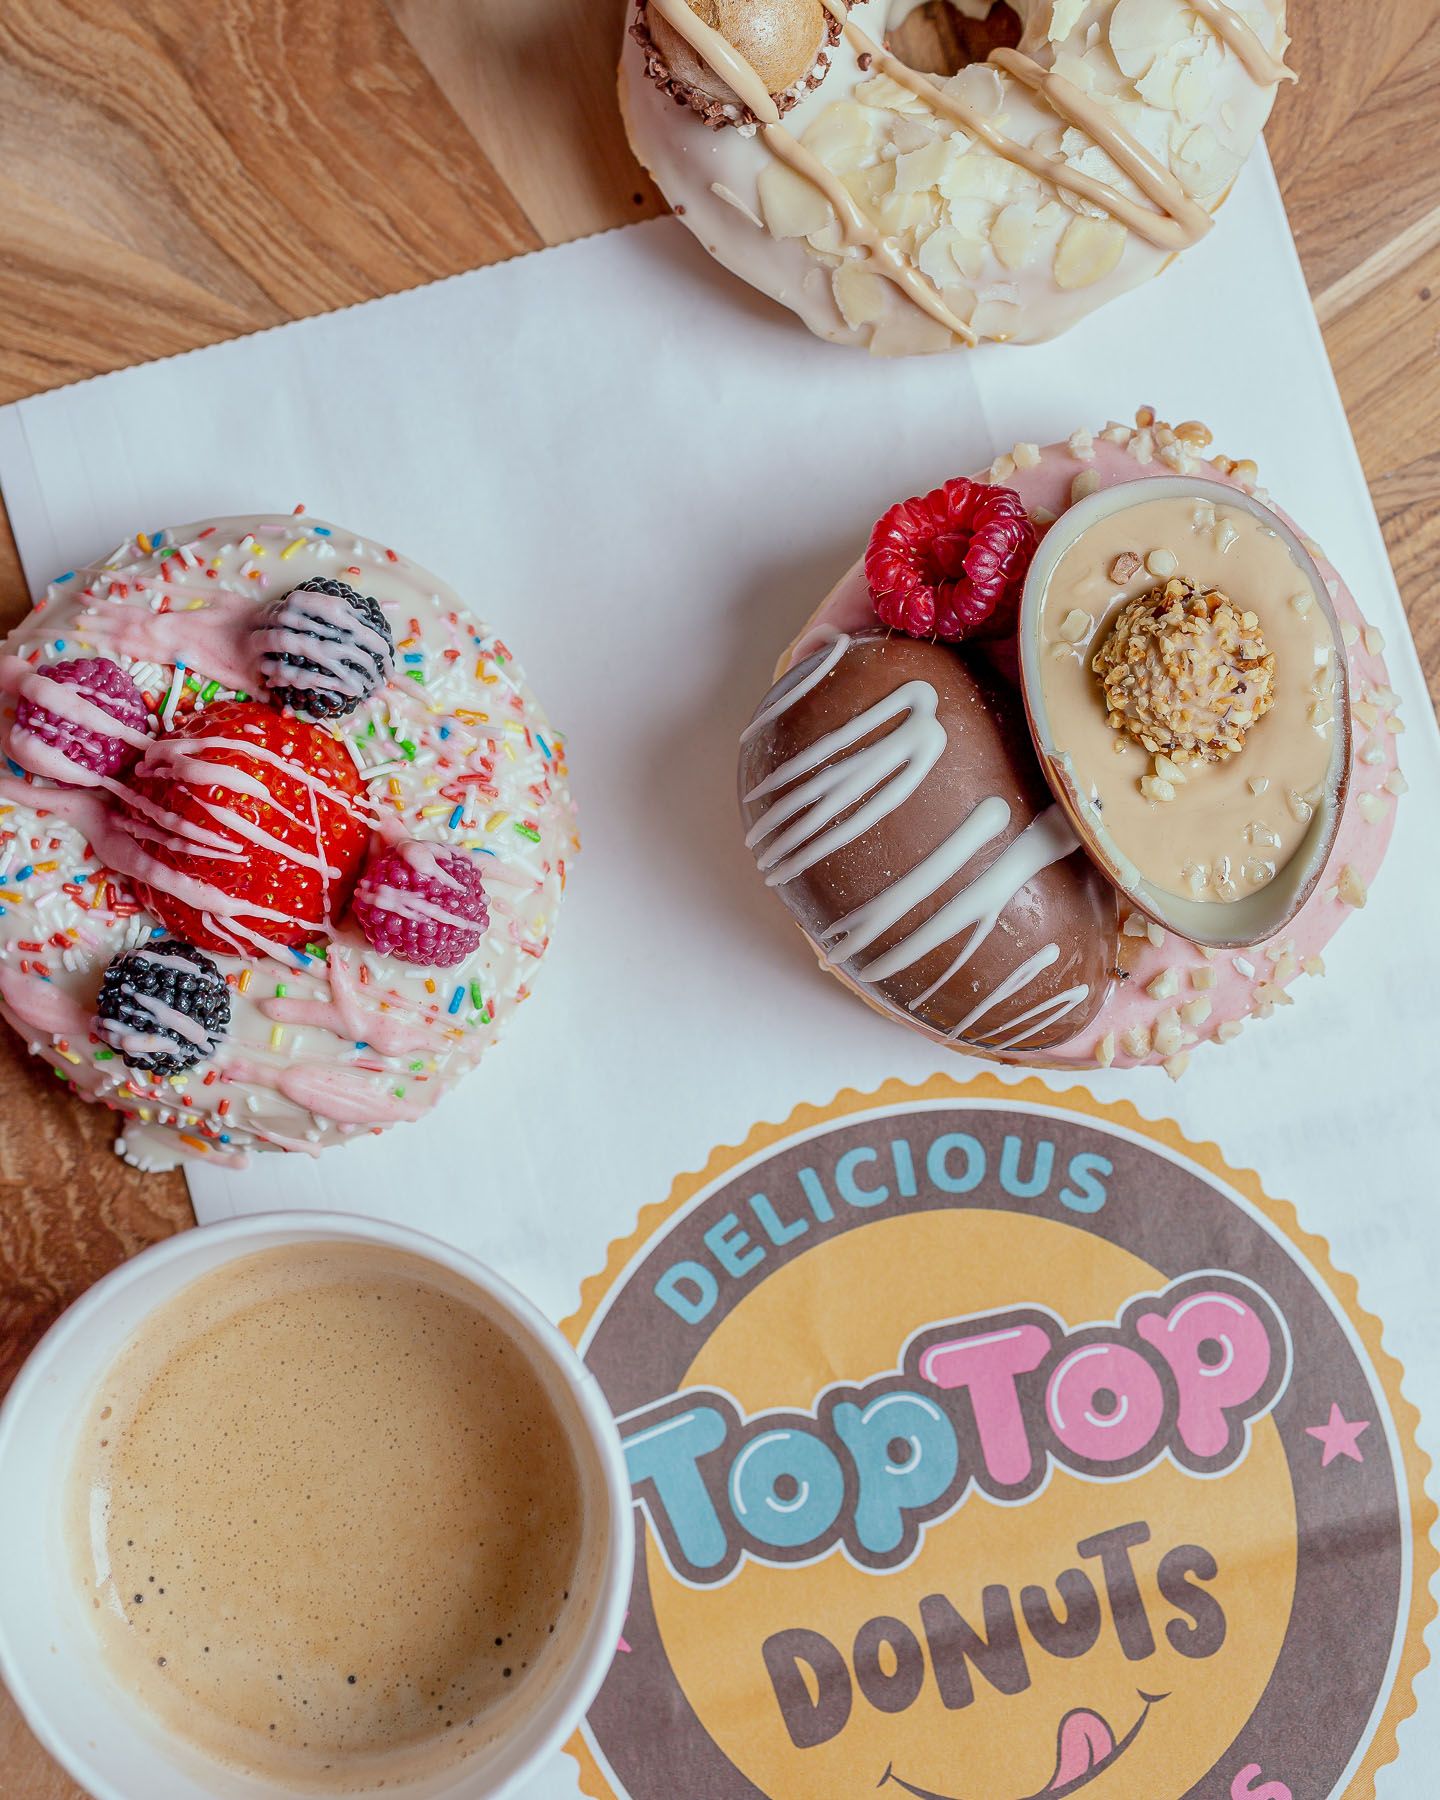 Titelbild des Unternehmens: TopTop Donuts in Düsseldorf